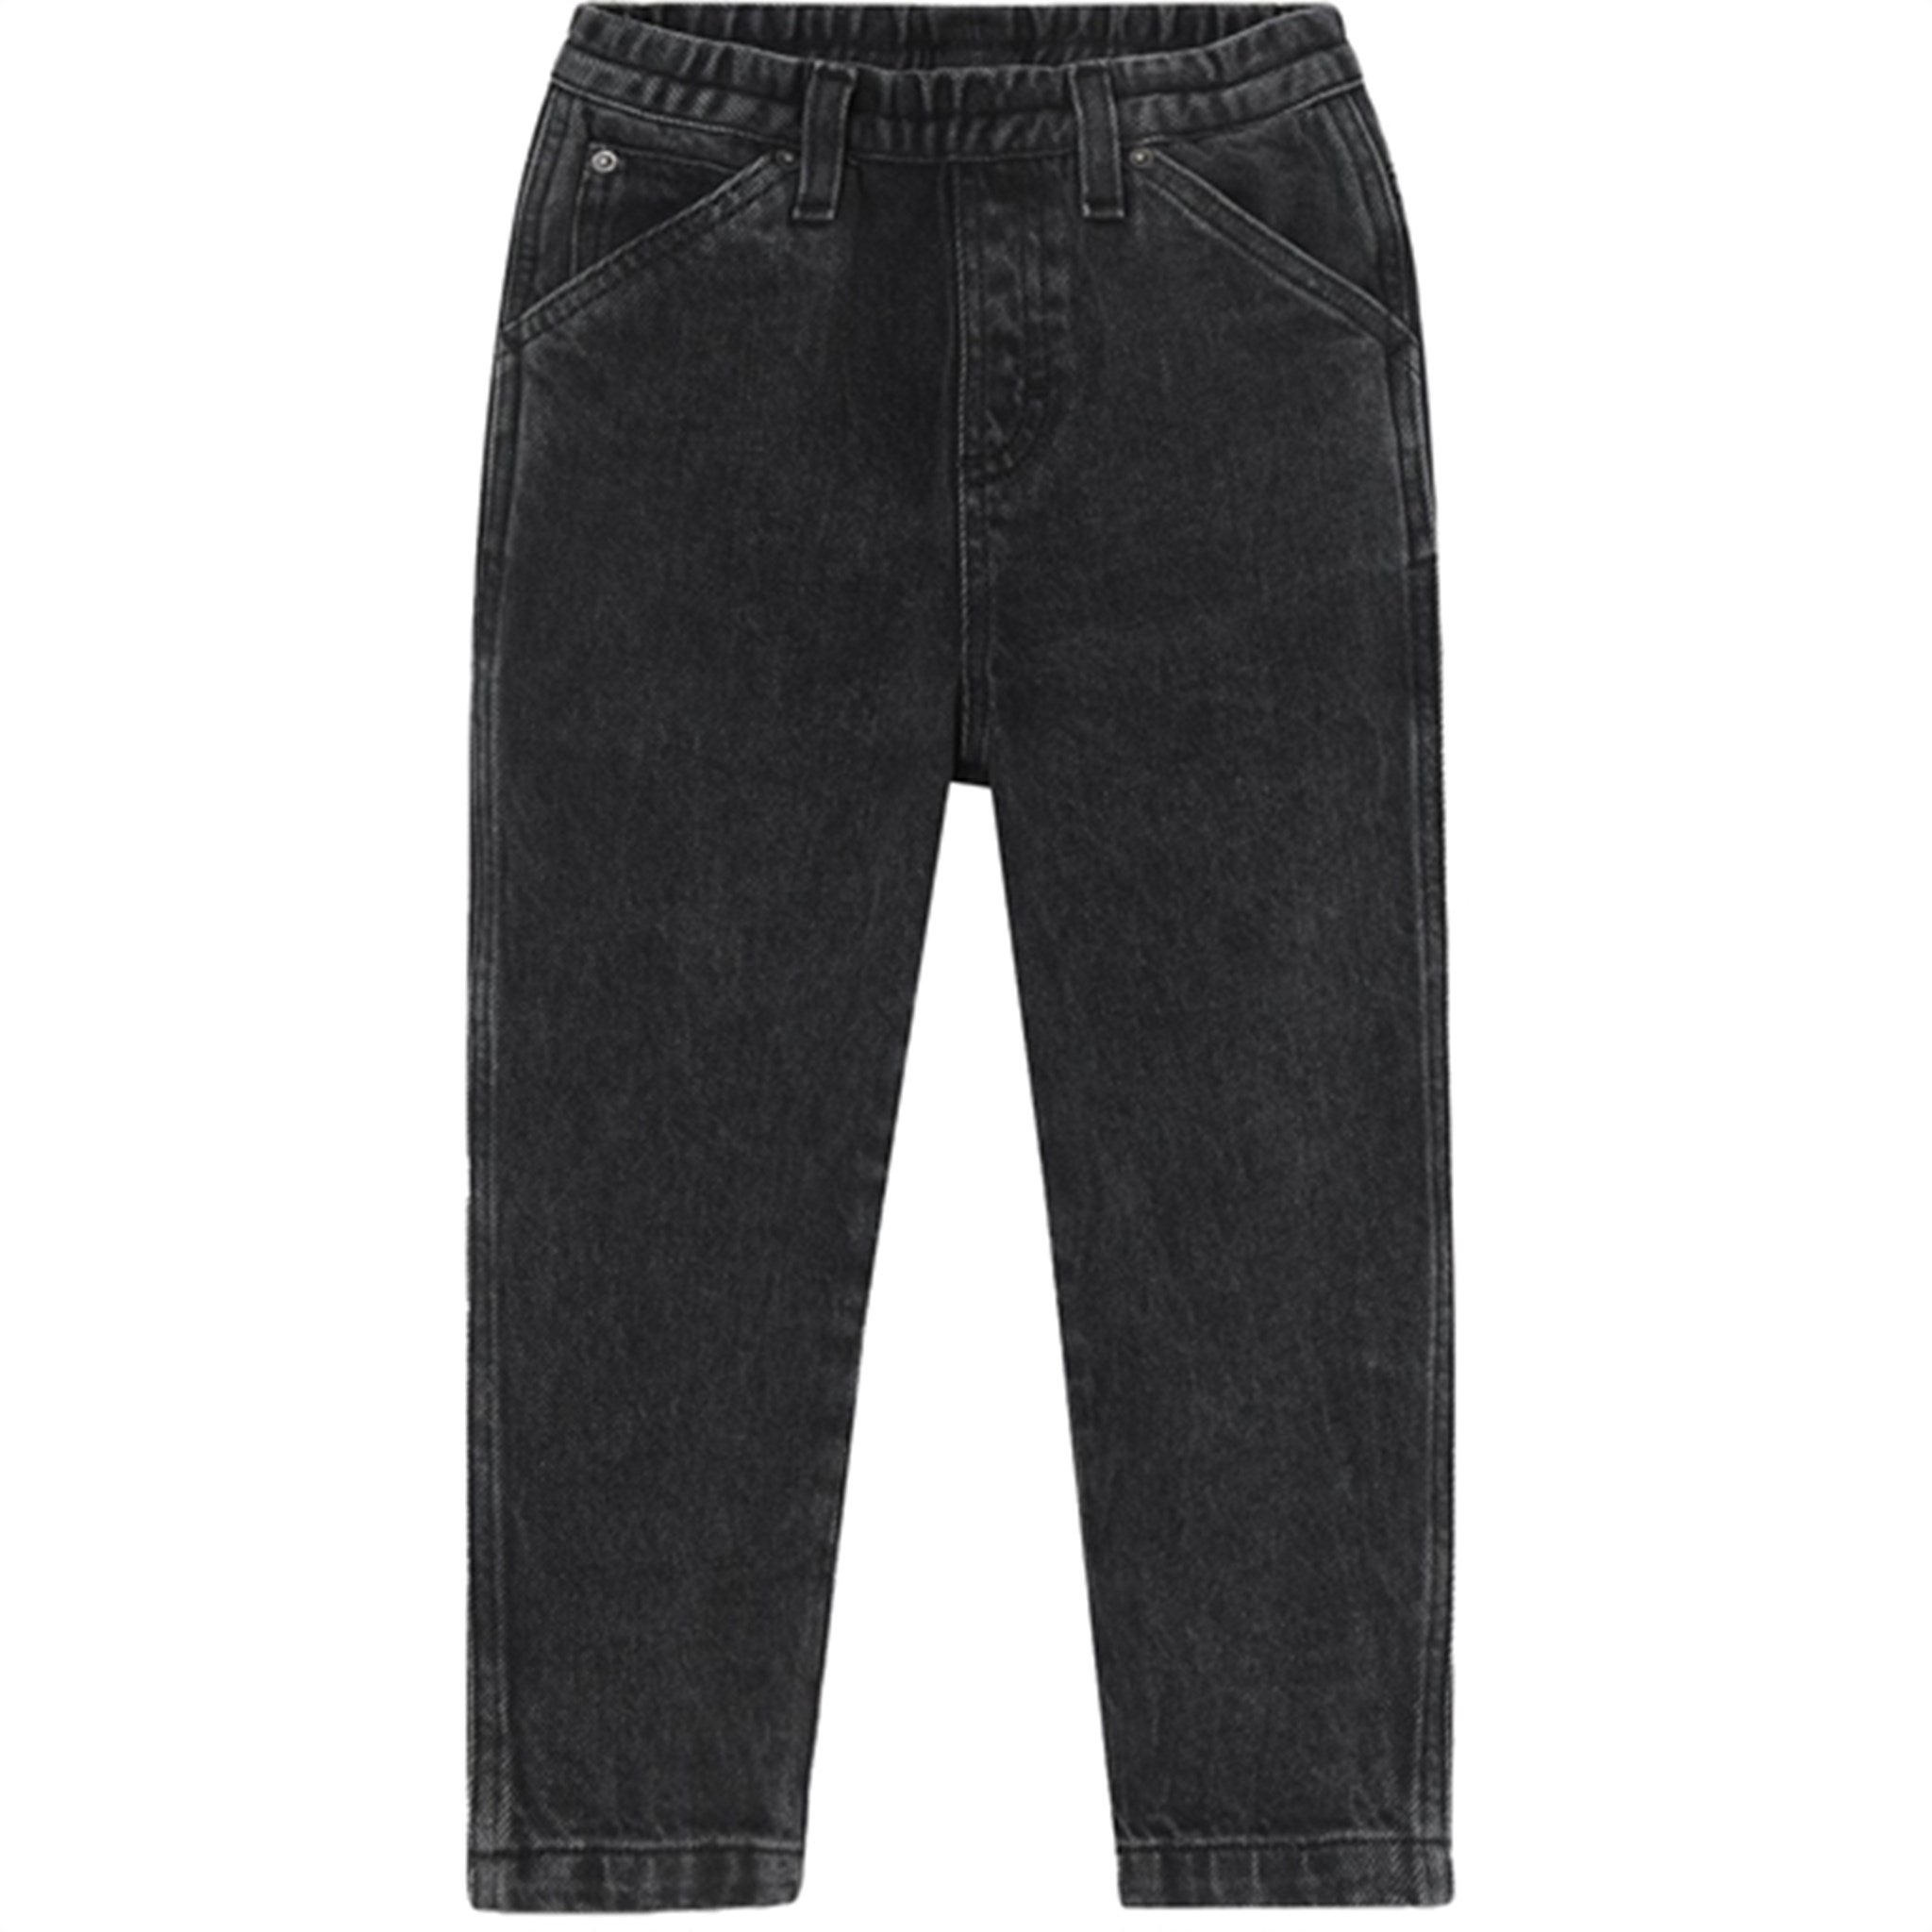 American Vintage Worker Jeans Yopday Black